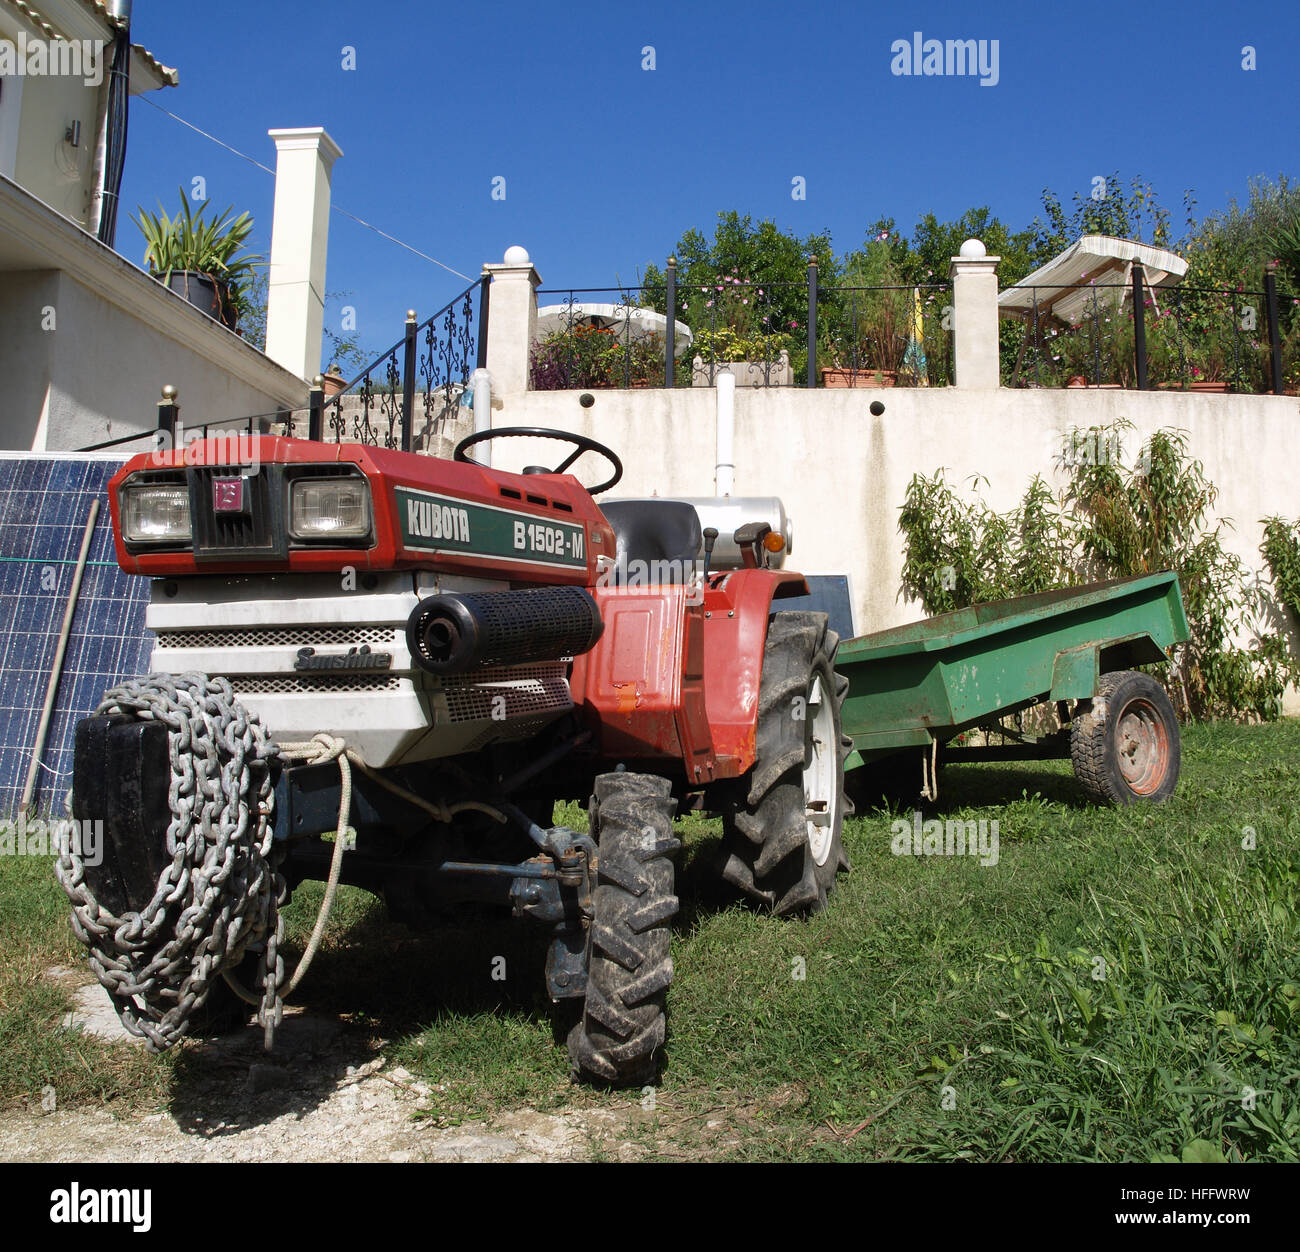 Mini tracteur agricole Kubota B1502-M avec remorque étant utilisés sur terre près de Karousades Corfu Grèce Banque D'Images